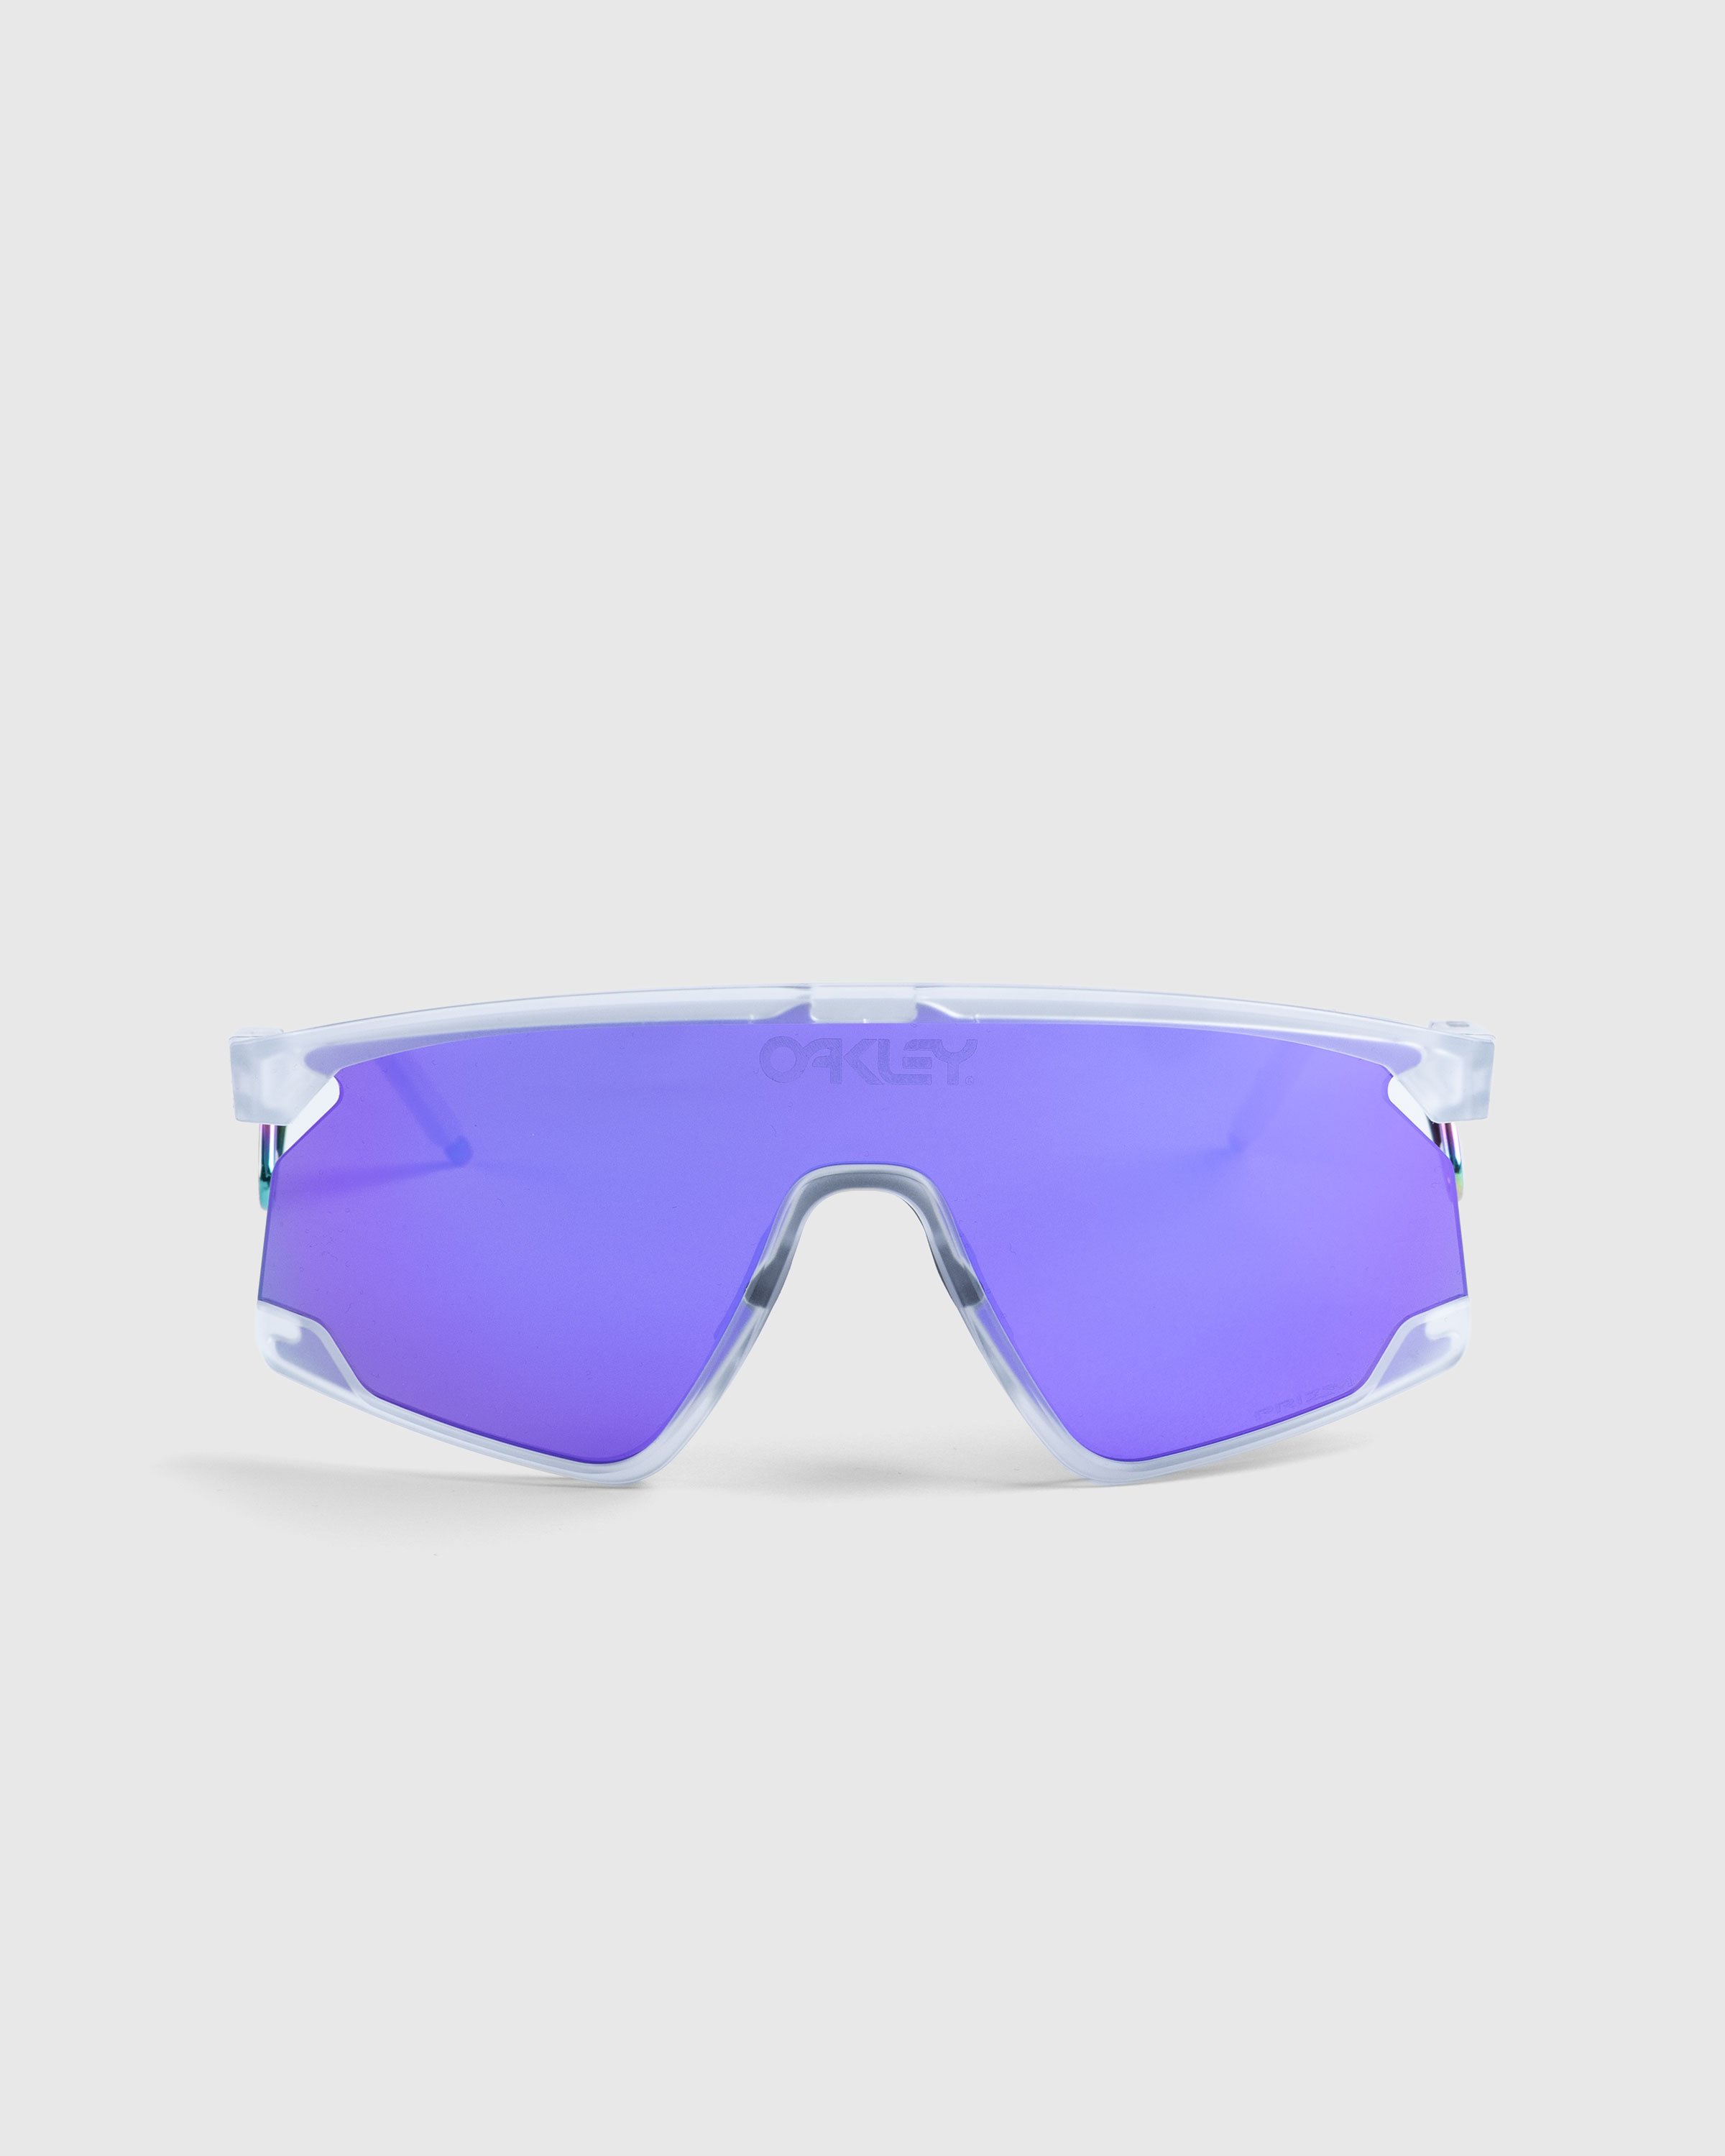 Oakley - BXTR Metal Matte Clear/Prizm Violet - Accessories - Purple - Image 1